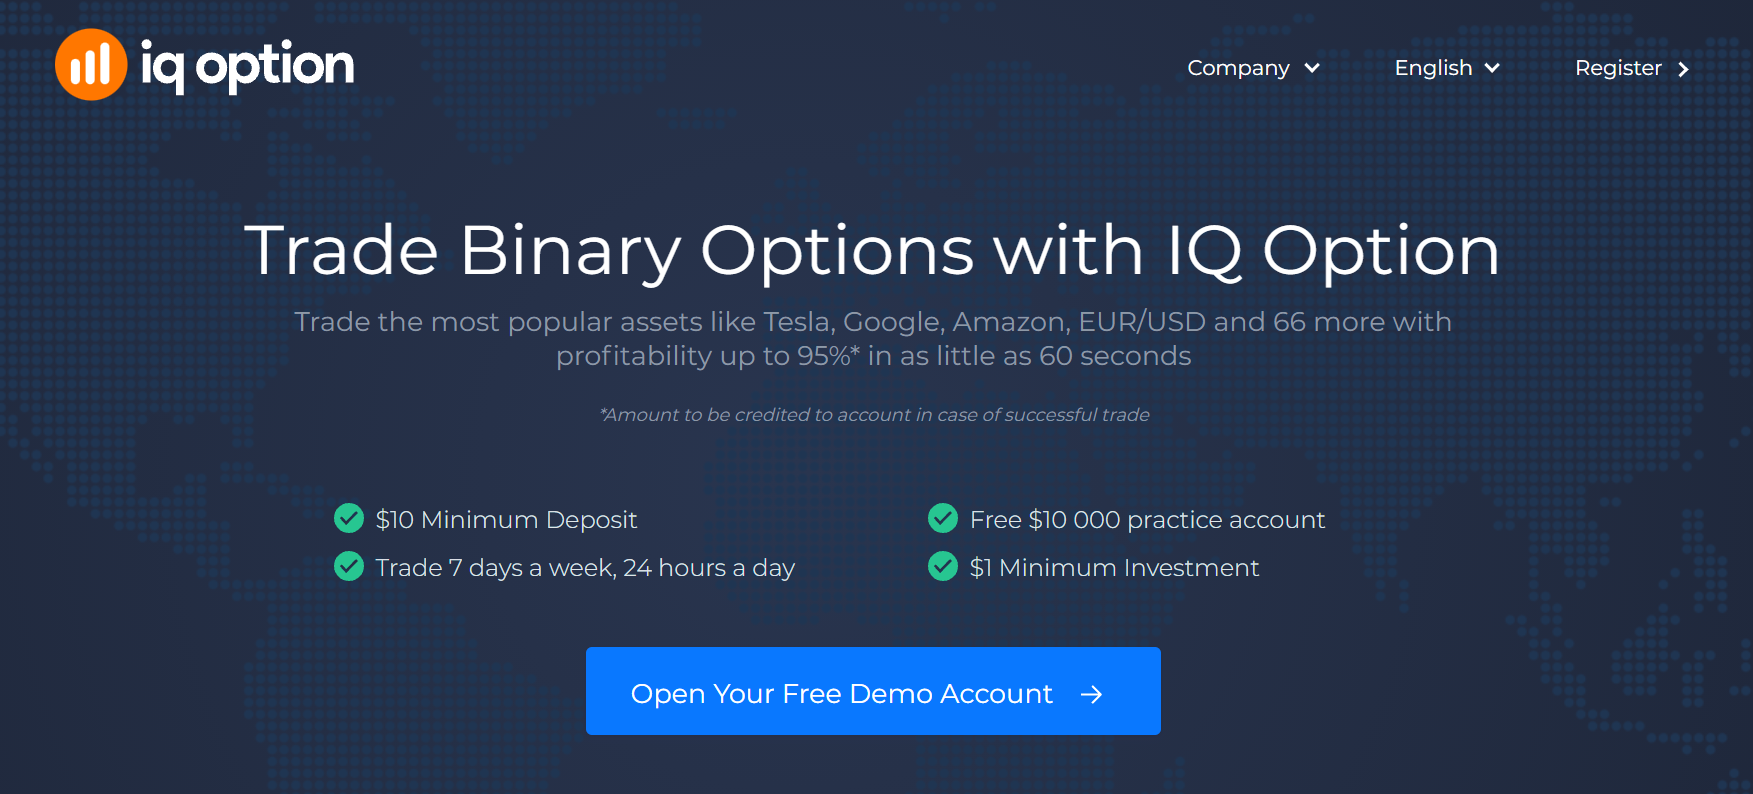 IQ Option Trading options